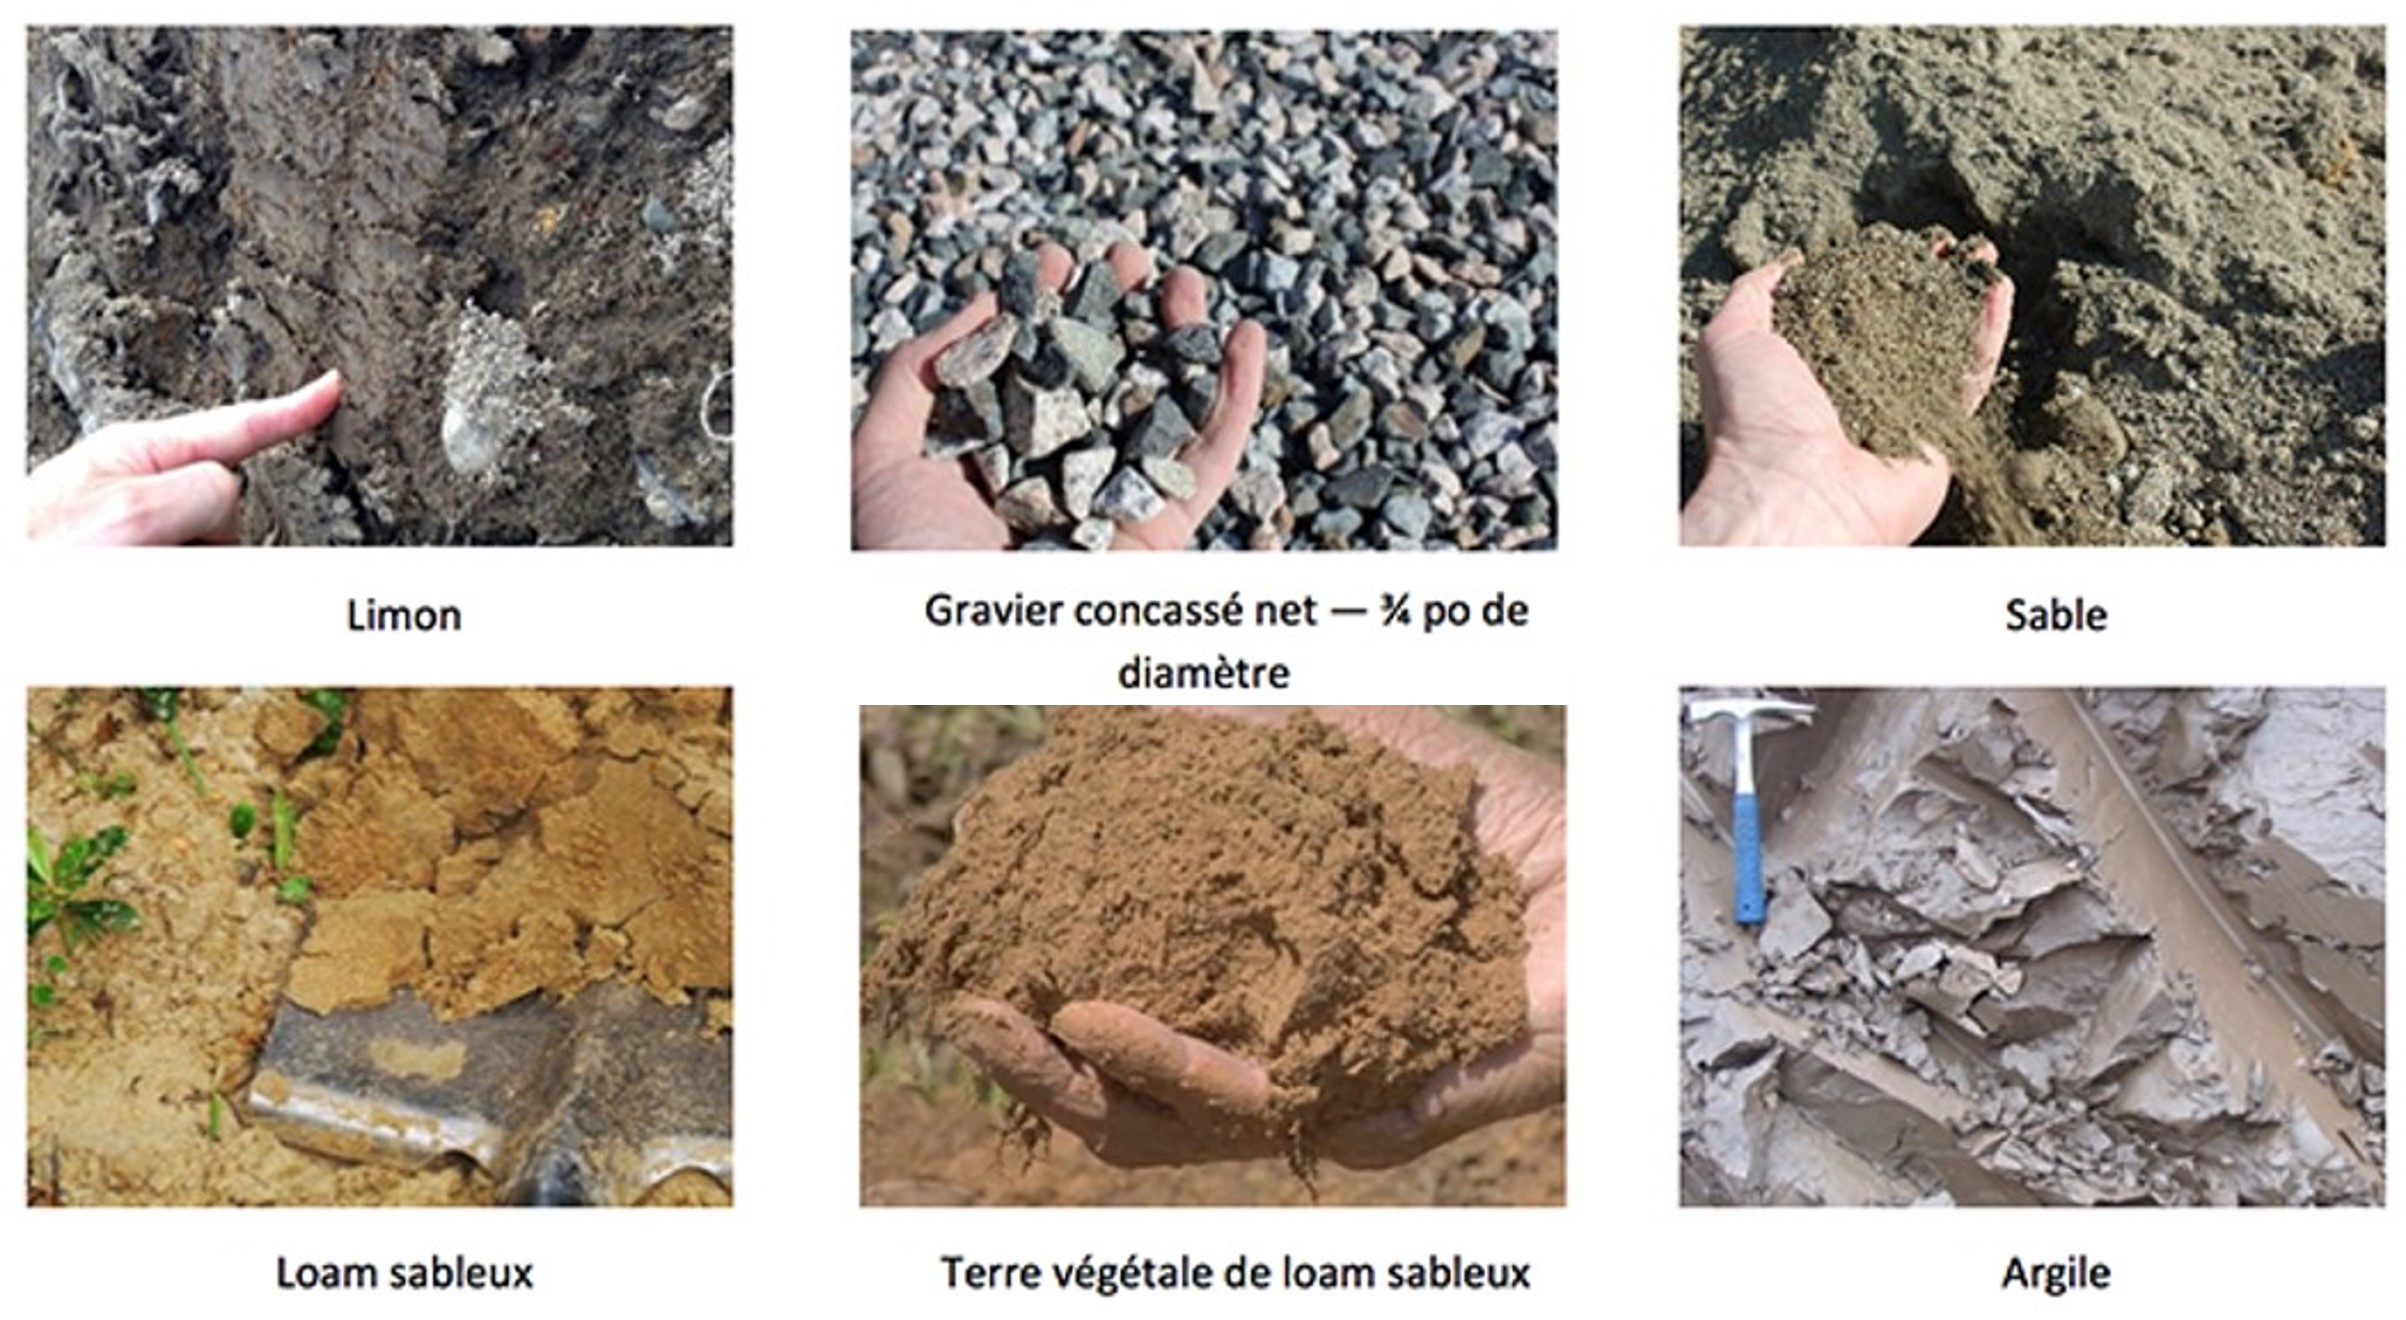 6 types de matériaux de remblai : limon, gravier, sable, loam sableux, terre végétale, argile